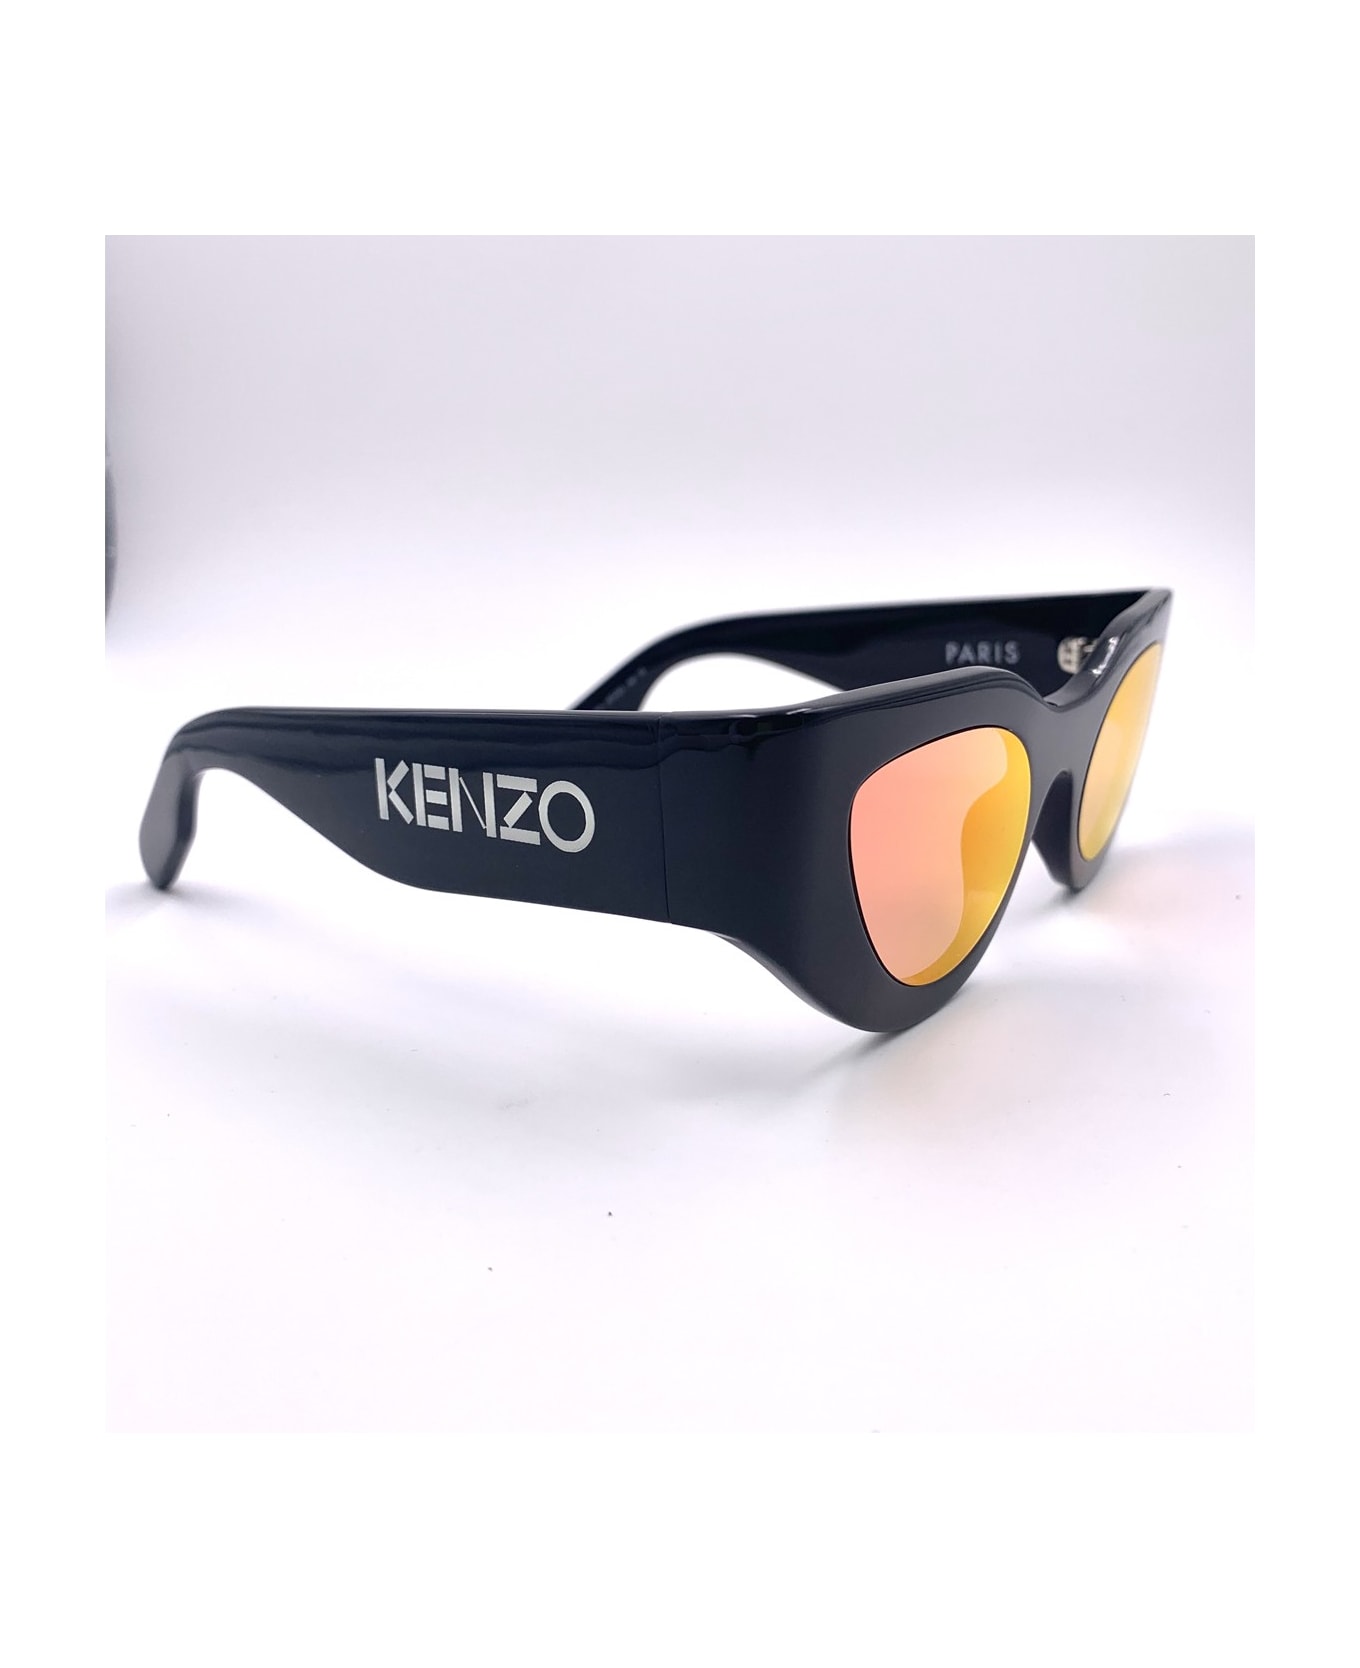 Kenzo Kz40067i Sunglasses - Nero